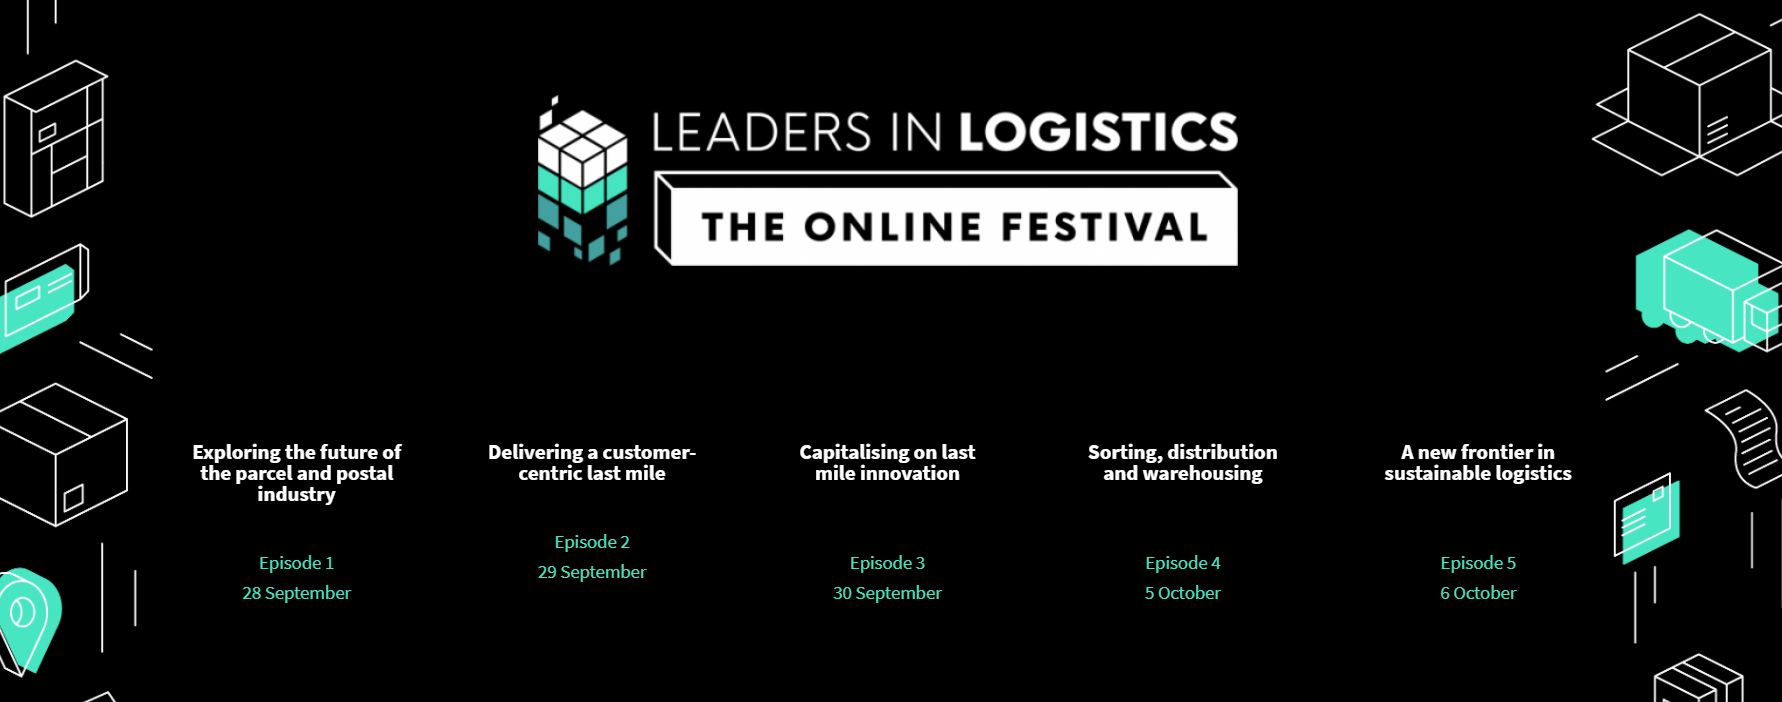 Leaders in Logistics Online Festival | September - October 2021, Online Event